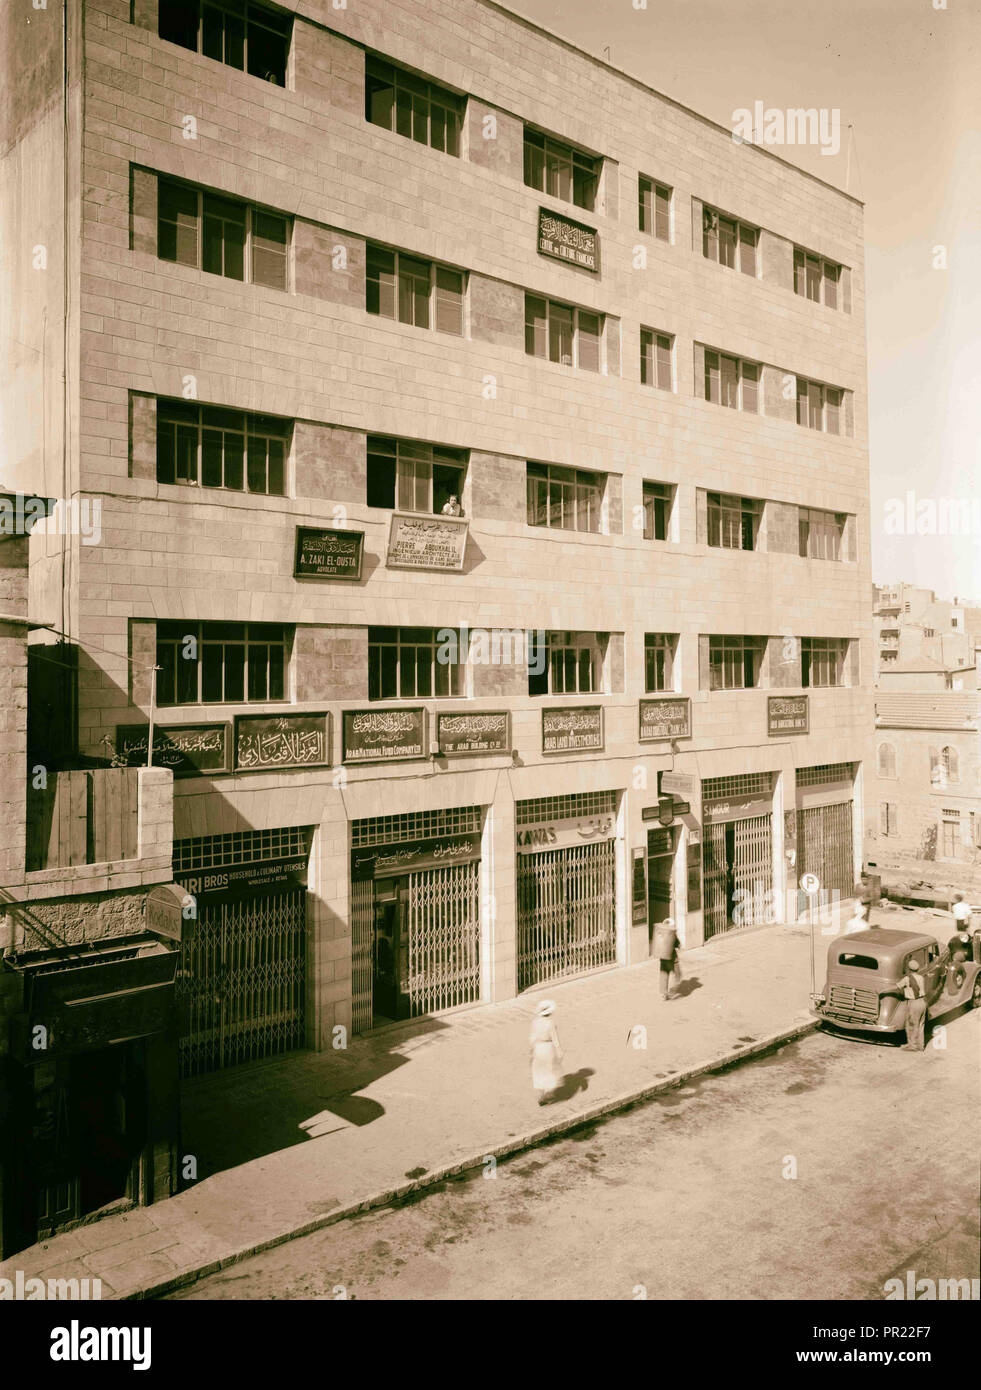 Kawas, Mamillah Road. La photo montre la colonie américaine Photo Dept. signer dessus de la porte au premier étage. 1938, Jérusalem, Israël Banque D'Images